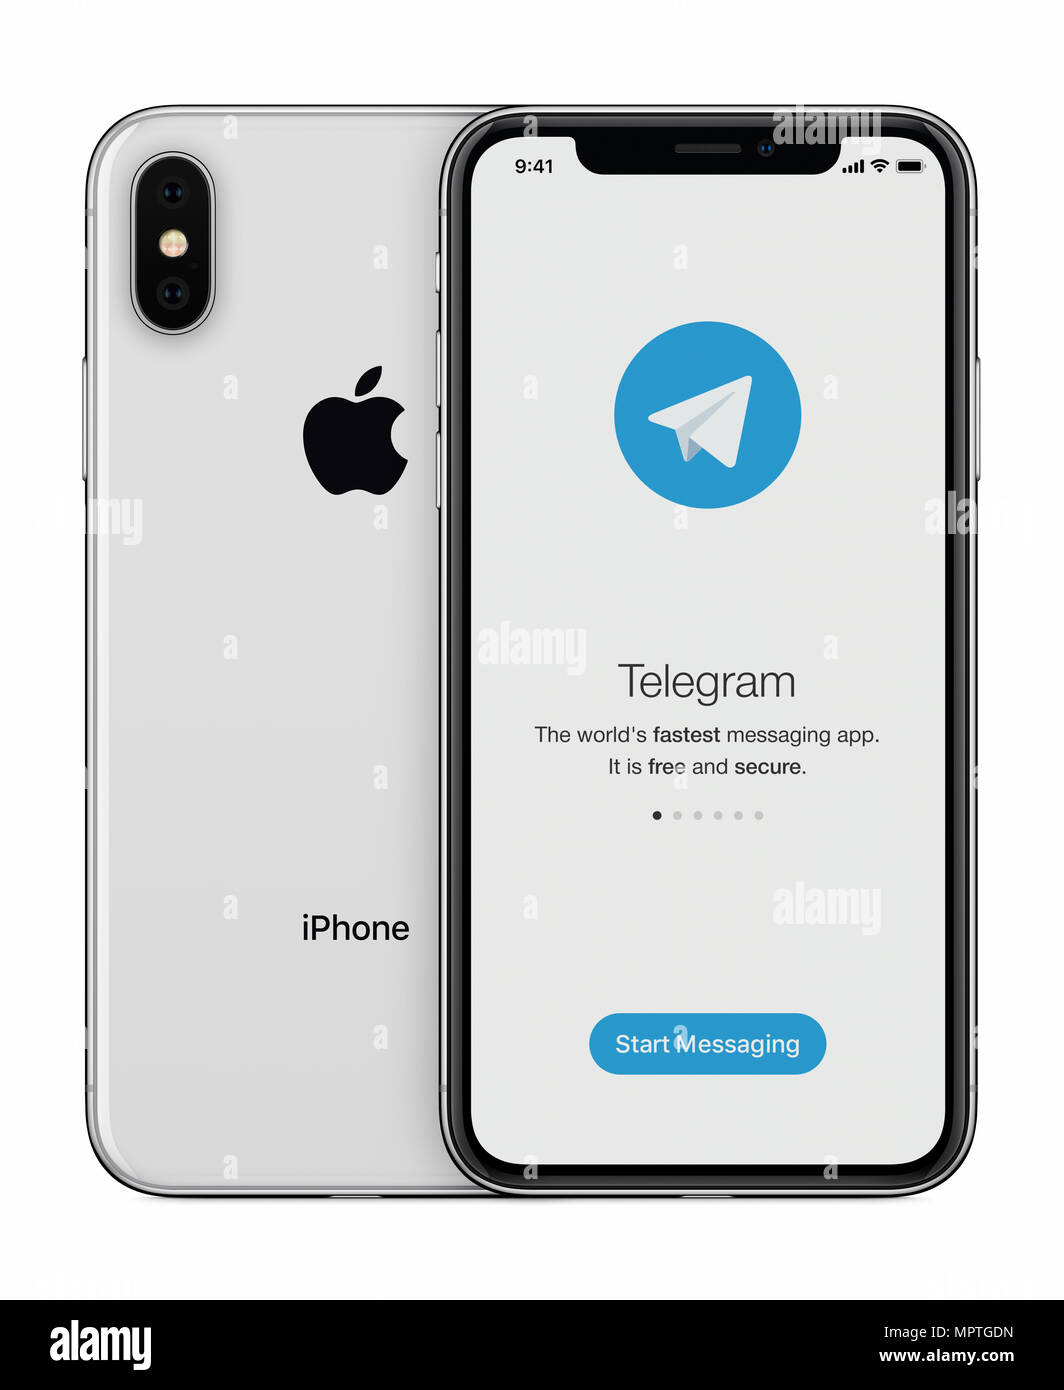 Telegramma Messenger nella schermata di lancio con telegramma logo su iPhone Apple display X. Foto Stock